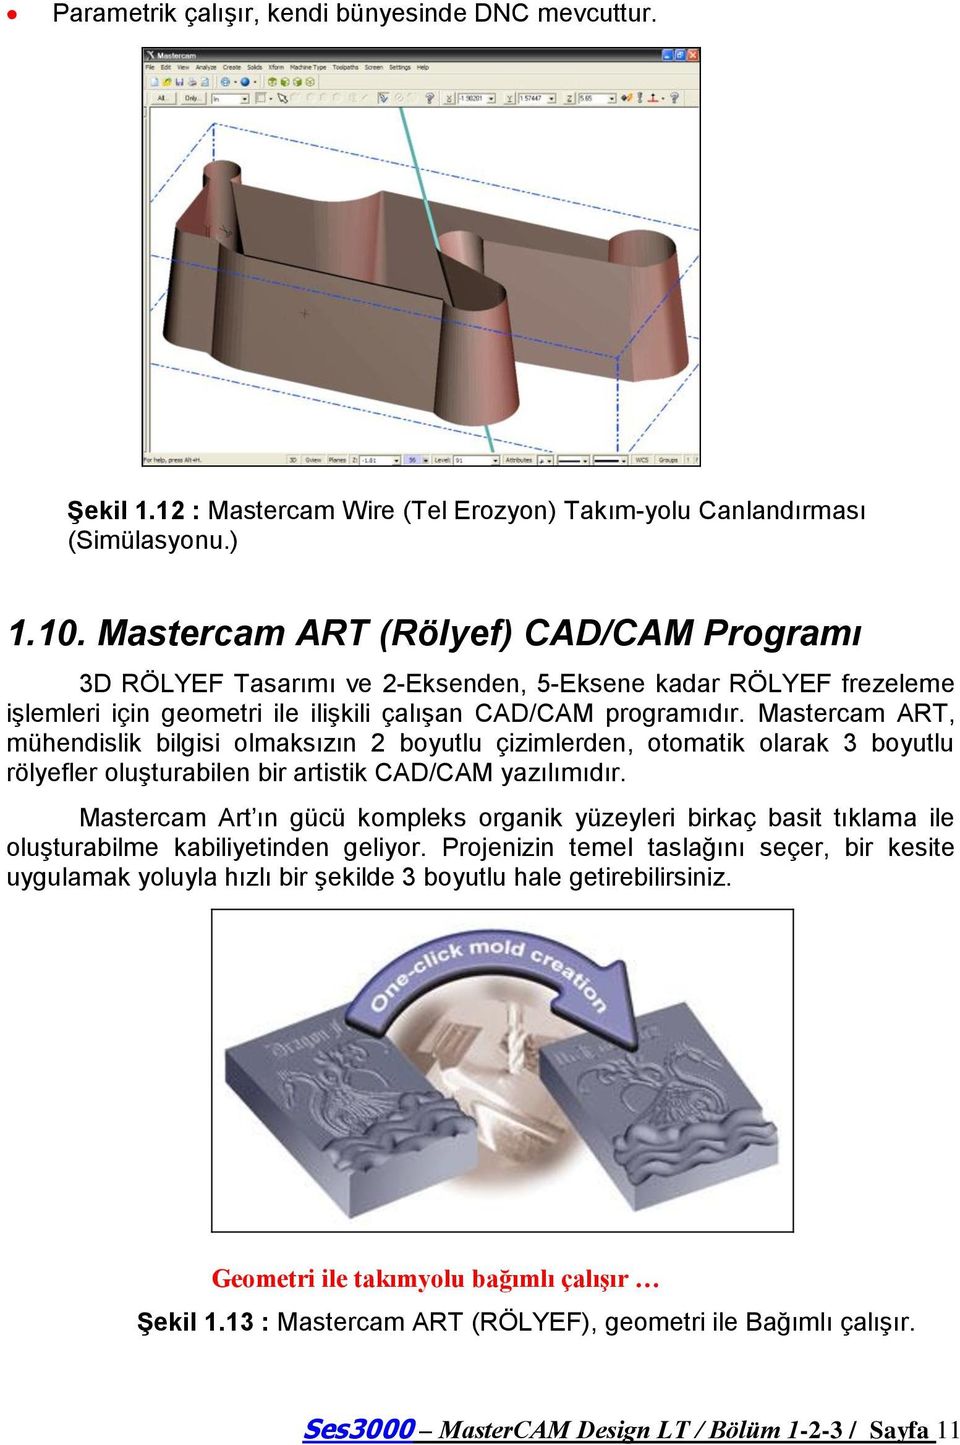 Mastercam ART, mühendislik bilgisi olmaksızın 2 boyutlu çizimlerden, otomatik olarak 3 boyutlu rölyefler oluģturabilen bir artistik CAD/CAM yazılımıdır.